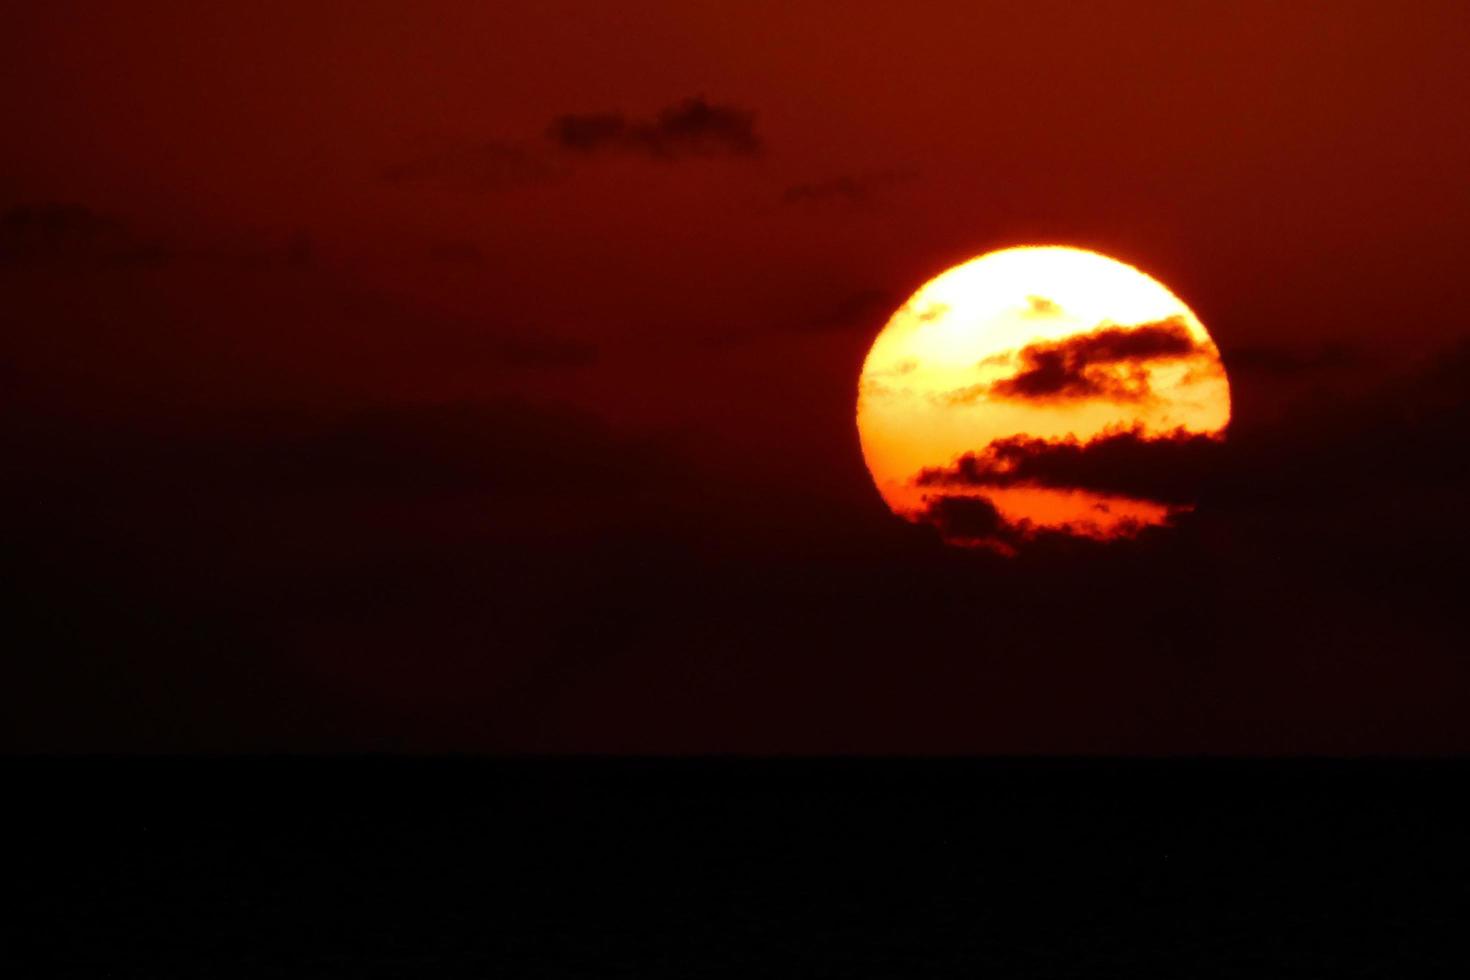 disco solar subindo no horizonte do mar, nascer do sol, amanhecer foto